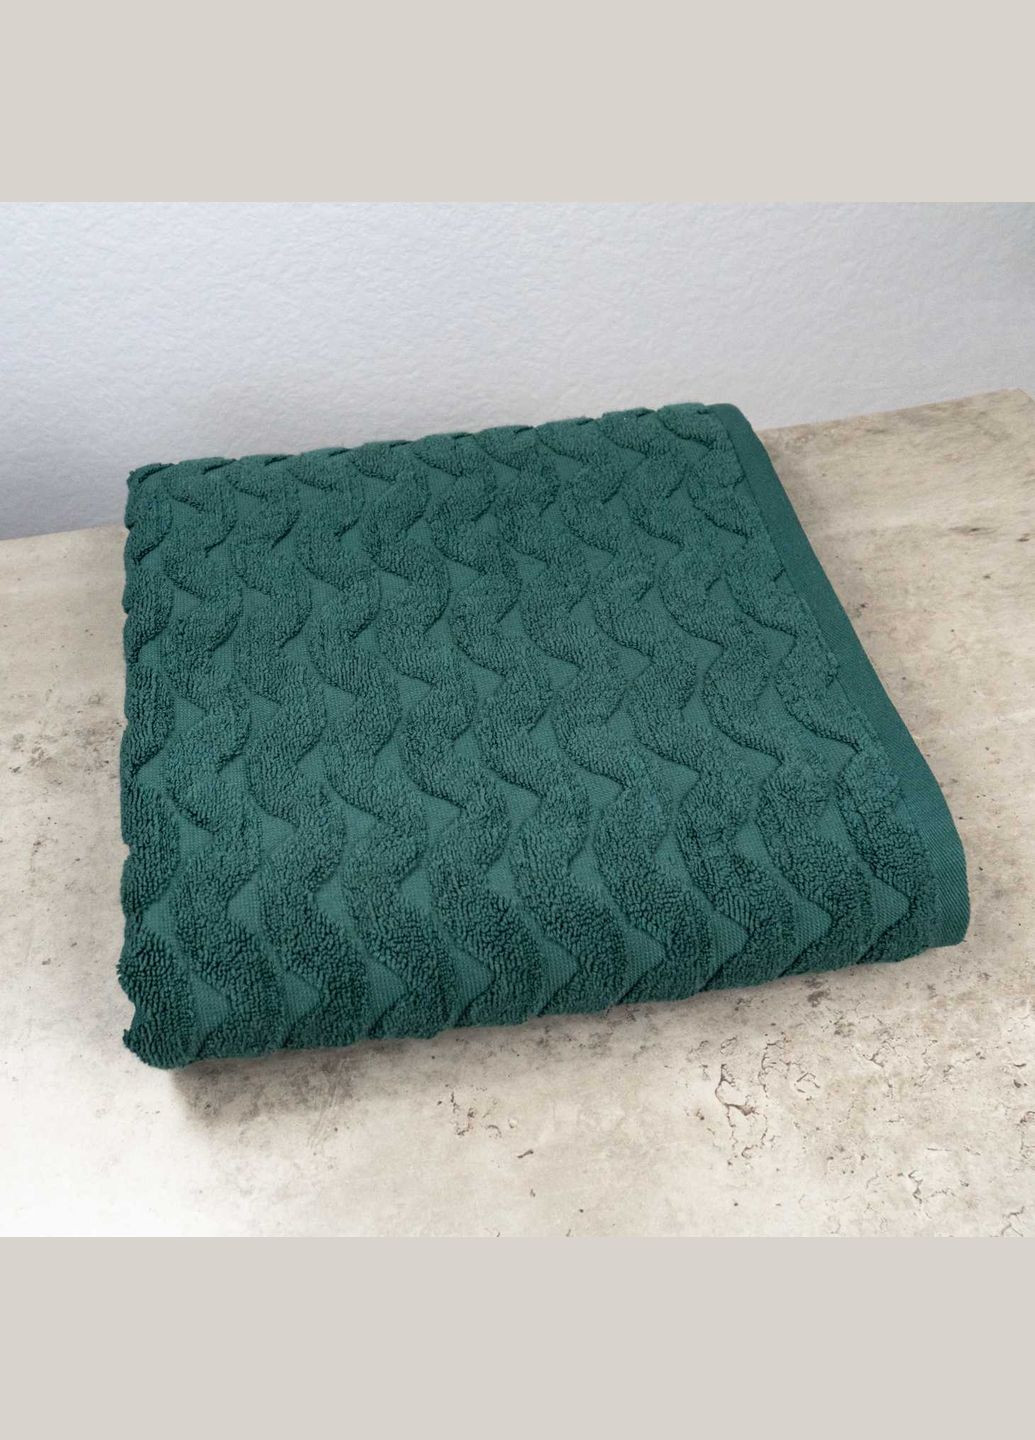 GM Textile махровое банное полотенце жаккардовое волна 70х140см 500г/м2 () зеленый производство -